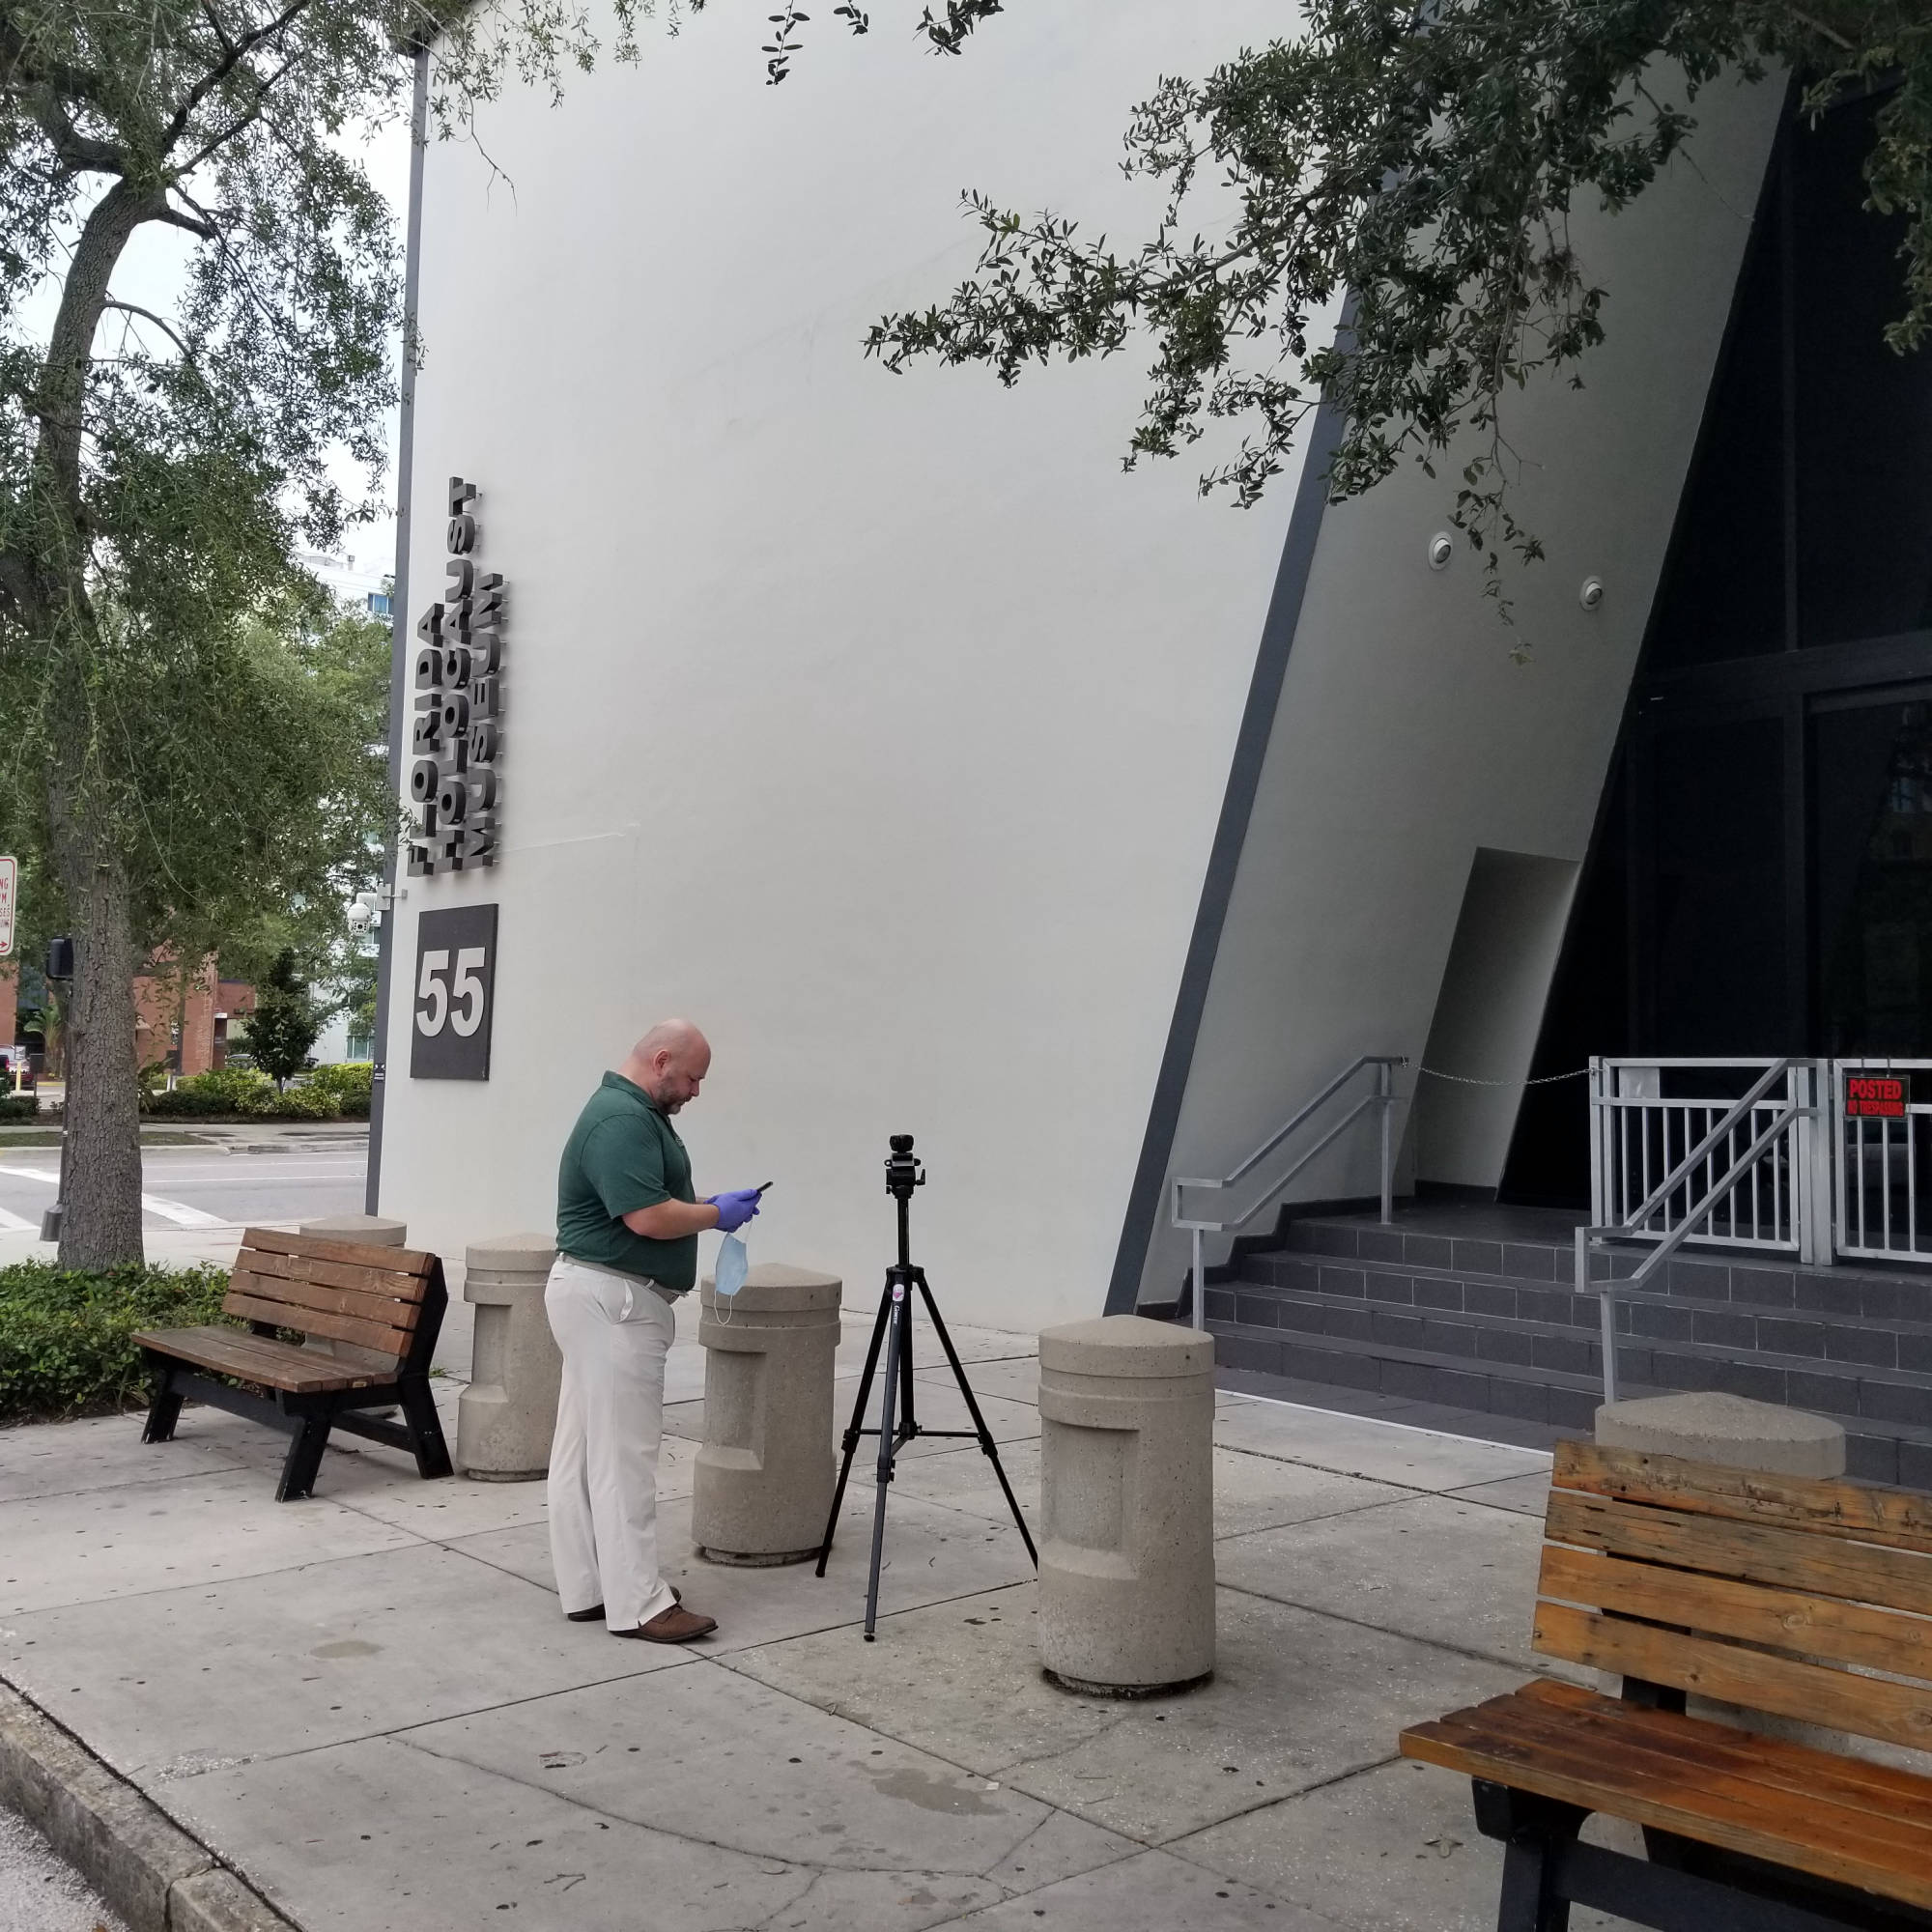 exterior of Florida Holocaust Museum